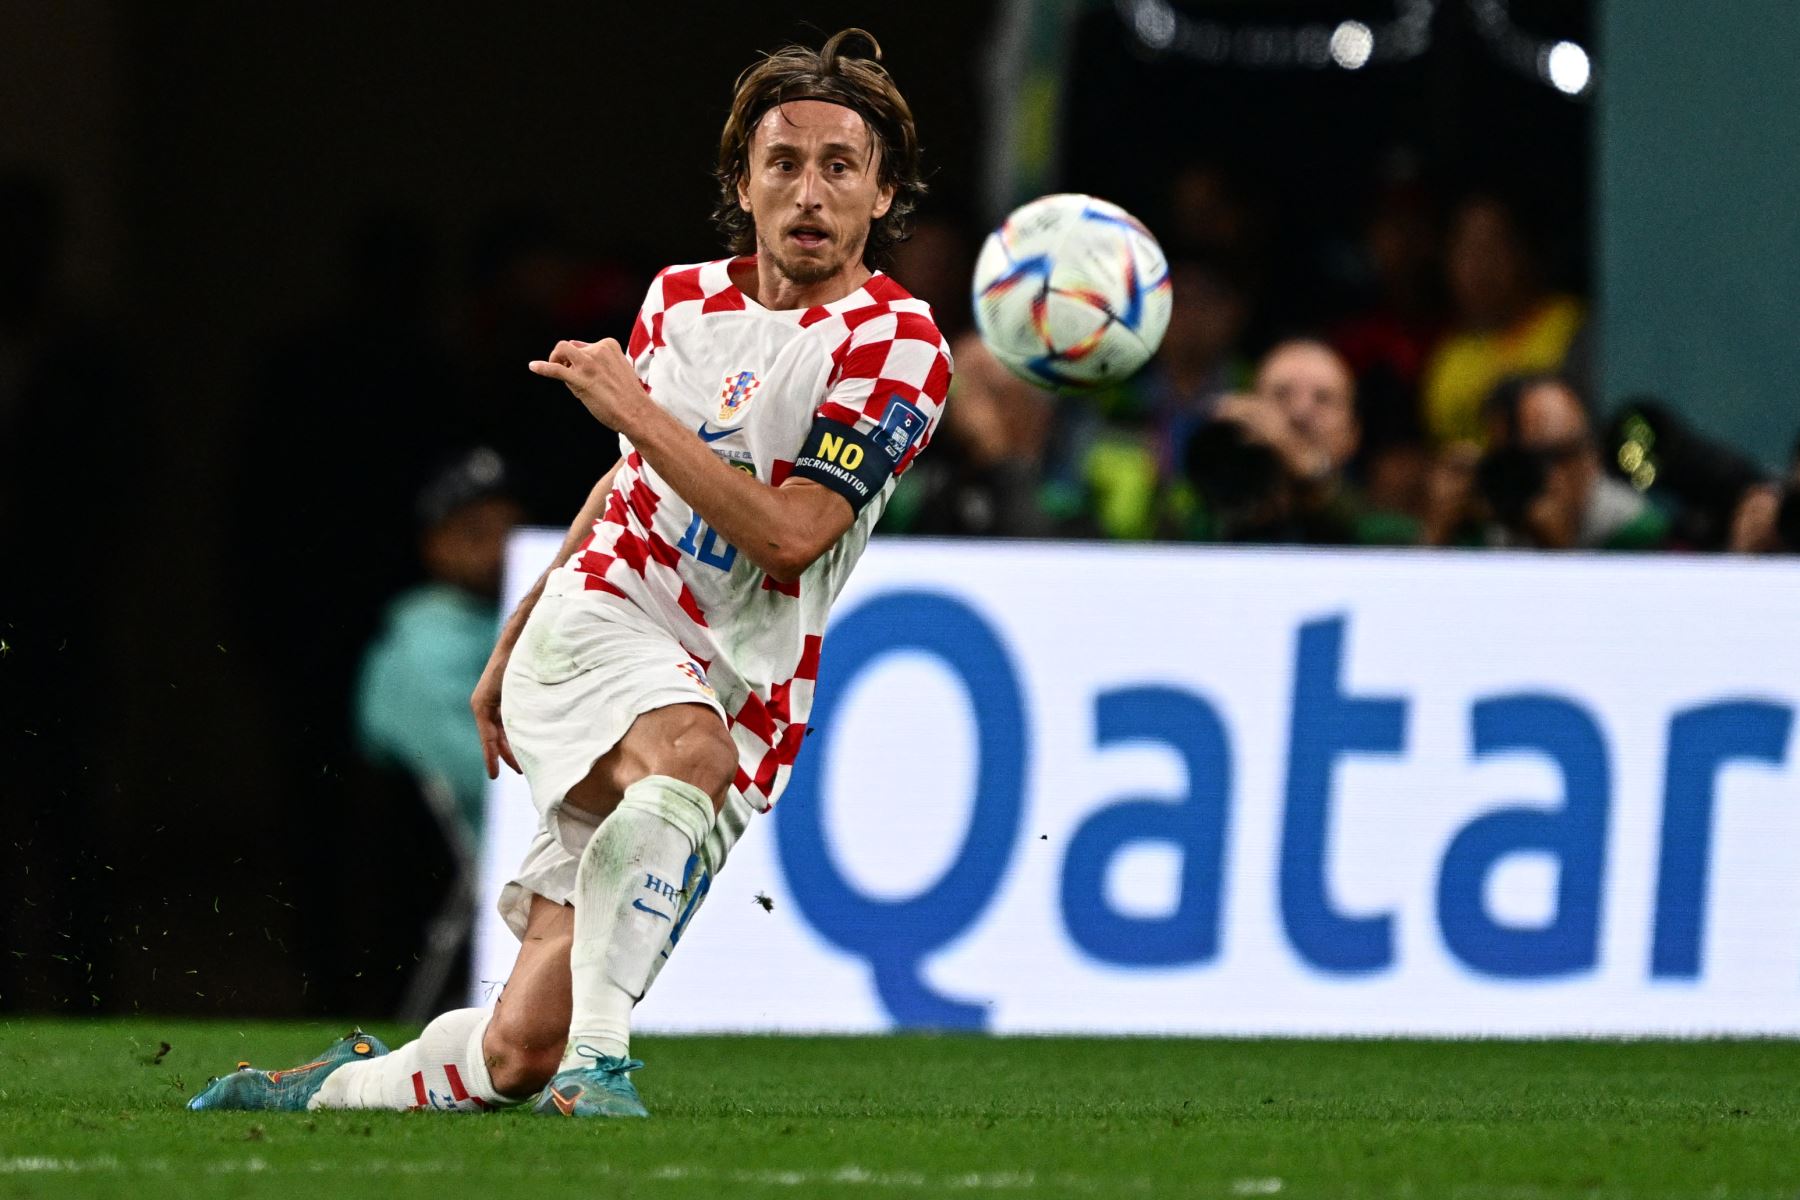 El centrocampista croata Luka Modric golpea el balón durante el partido de fútbol de cuartos de final de la Copa Mundial Qatar 2022 entre Croacia y Brasil.
Foto: AFP